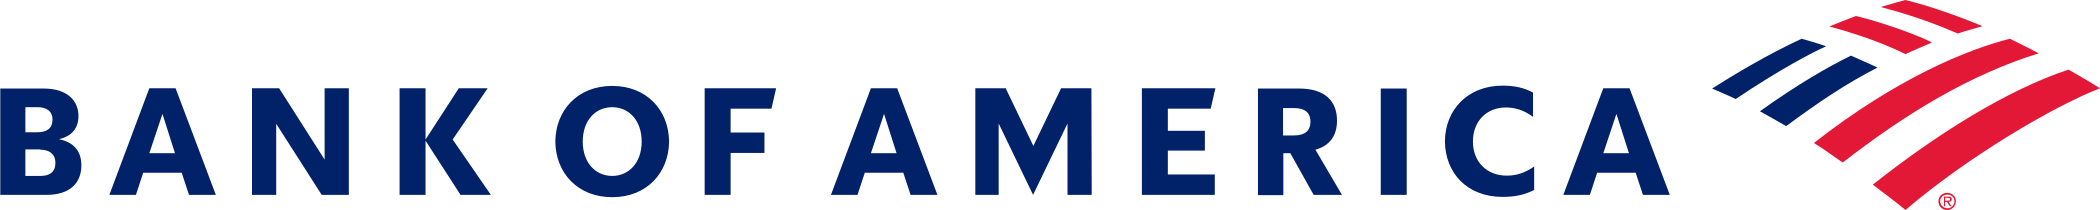 bank of america logo 1 - Bank of America Logo